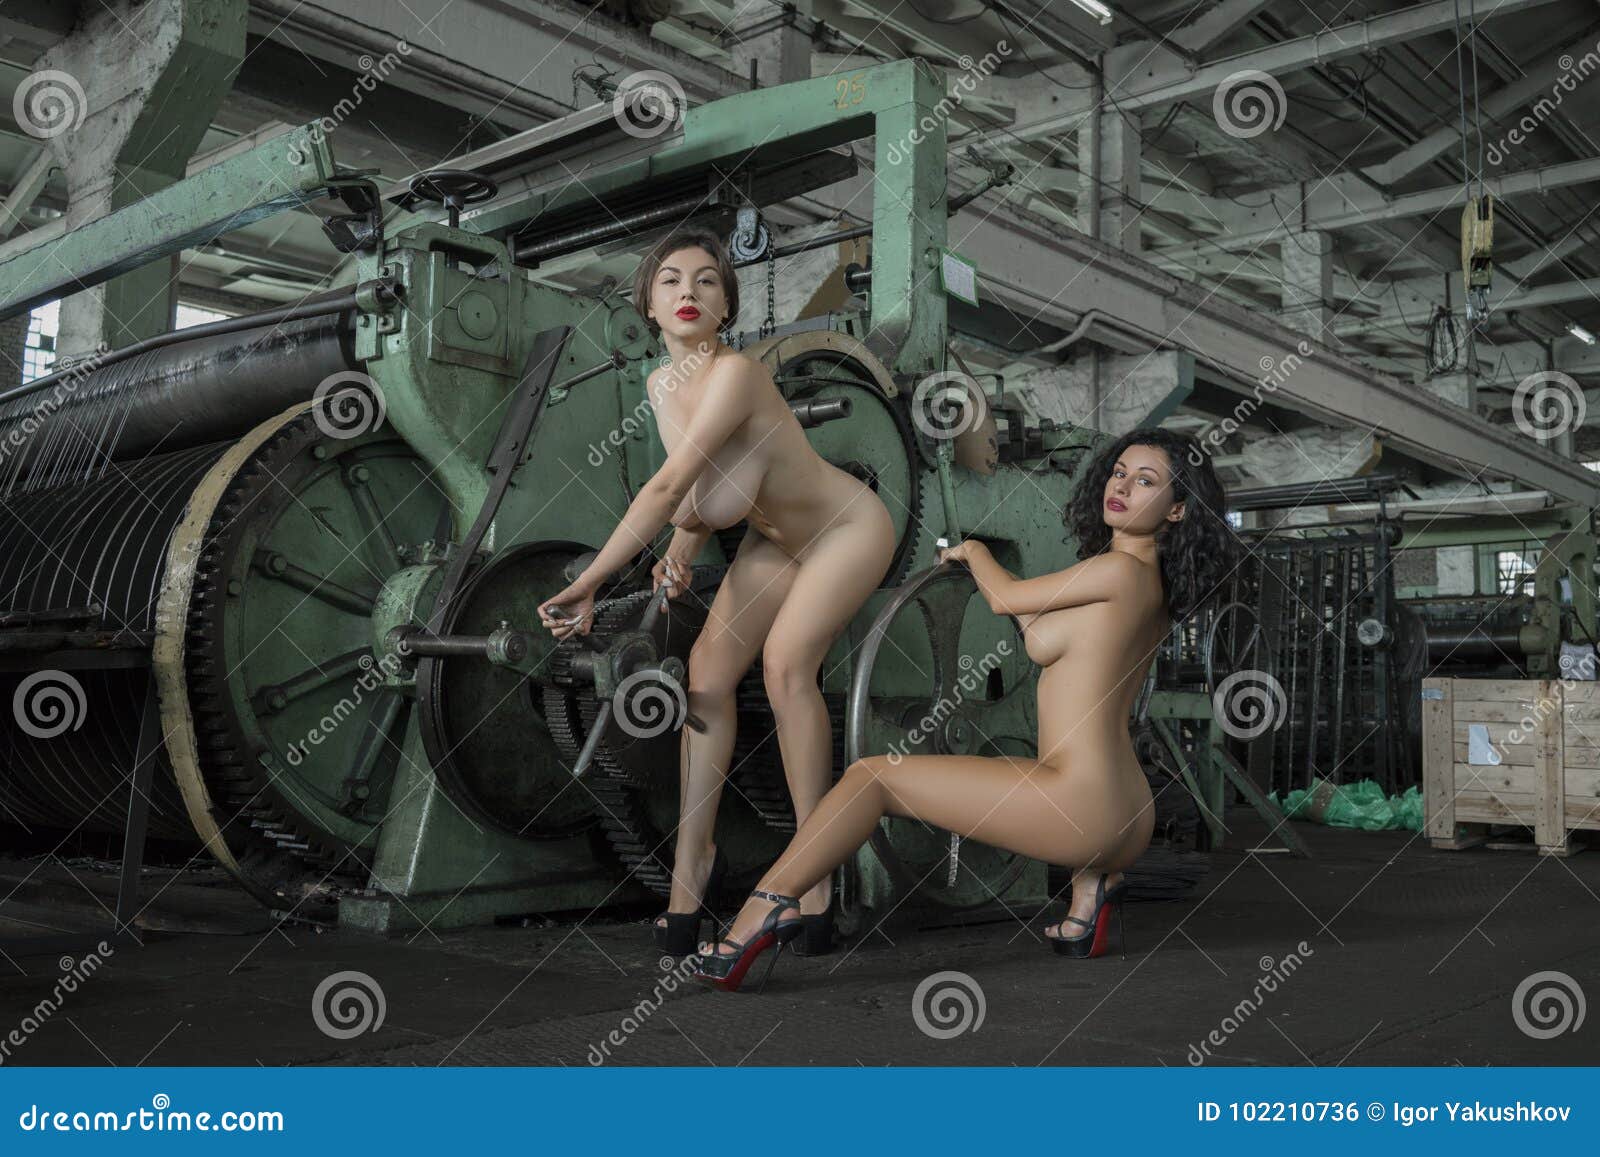 Nude photos Girl Factory Sex pics